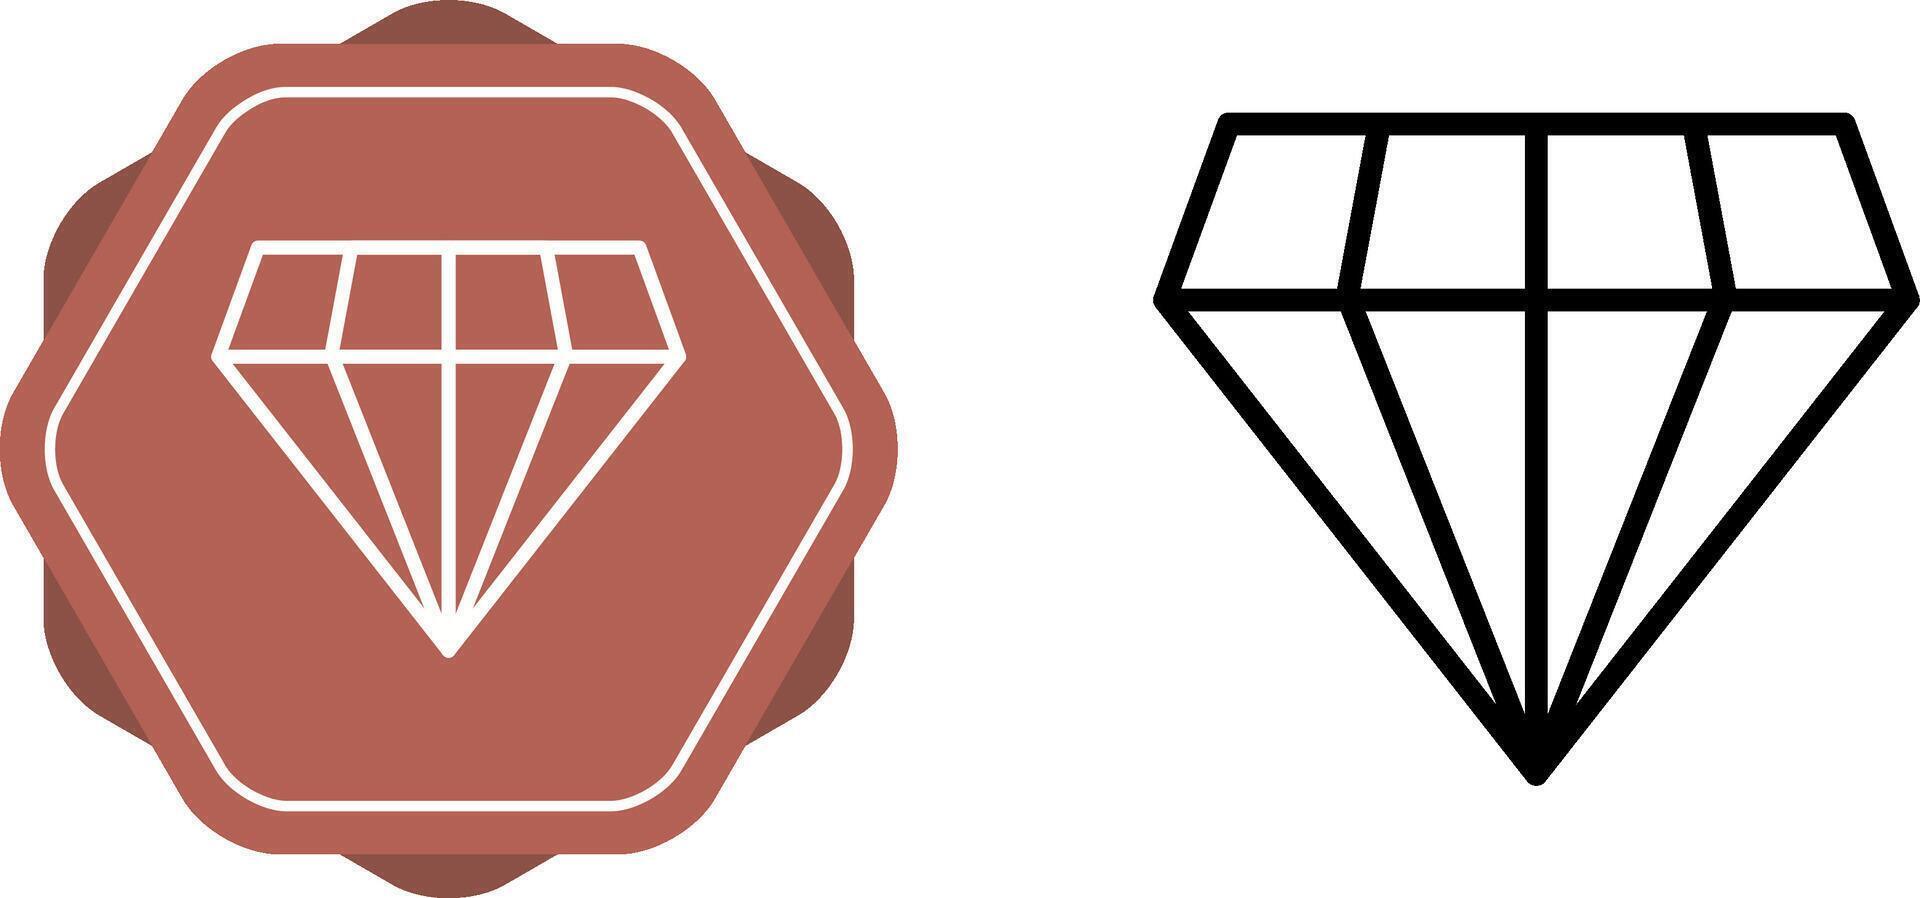 icona di vettore di diamante